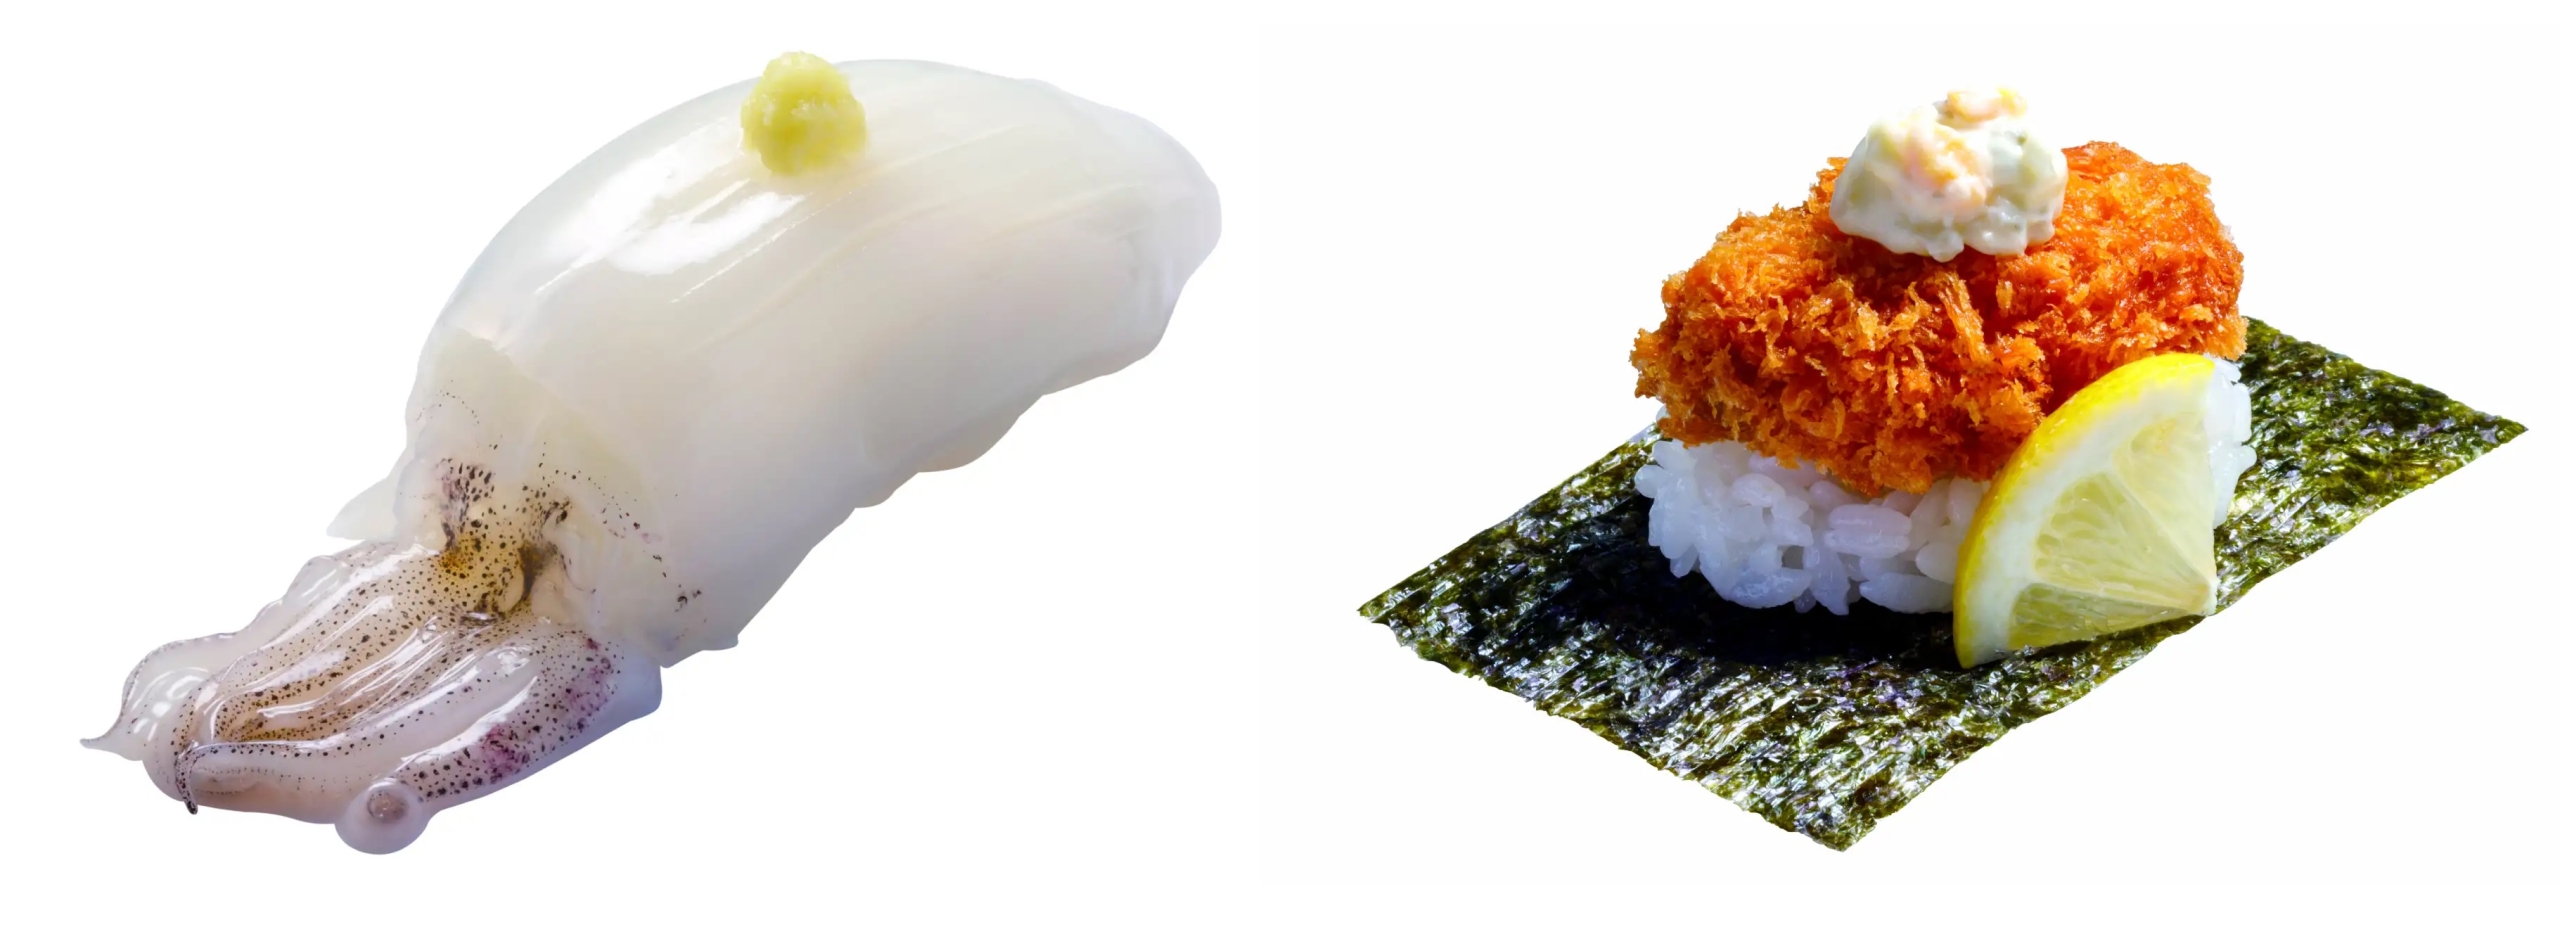 はま寿司 「姿やりいか」「広島県産牡蠣(かき)のカキフライつつみ〈タルタルソース〉」